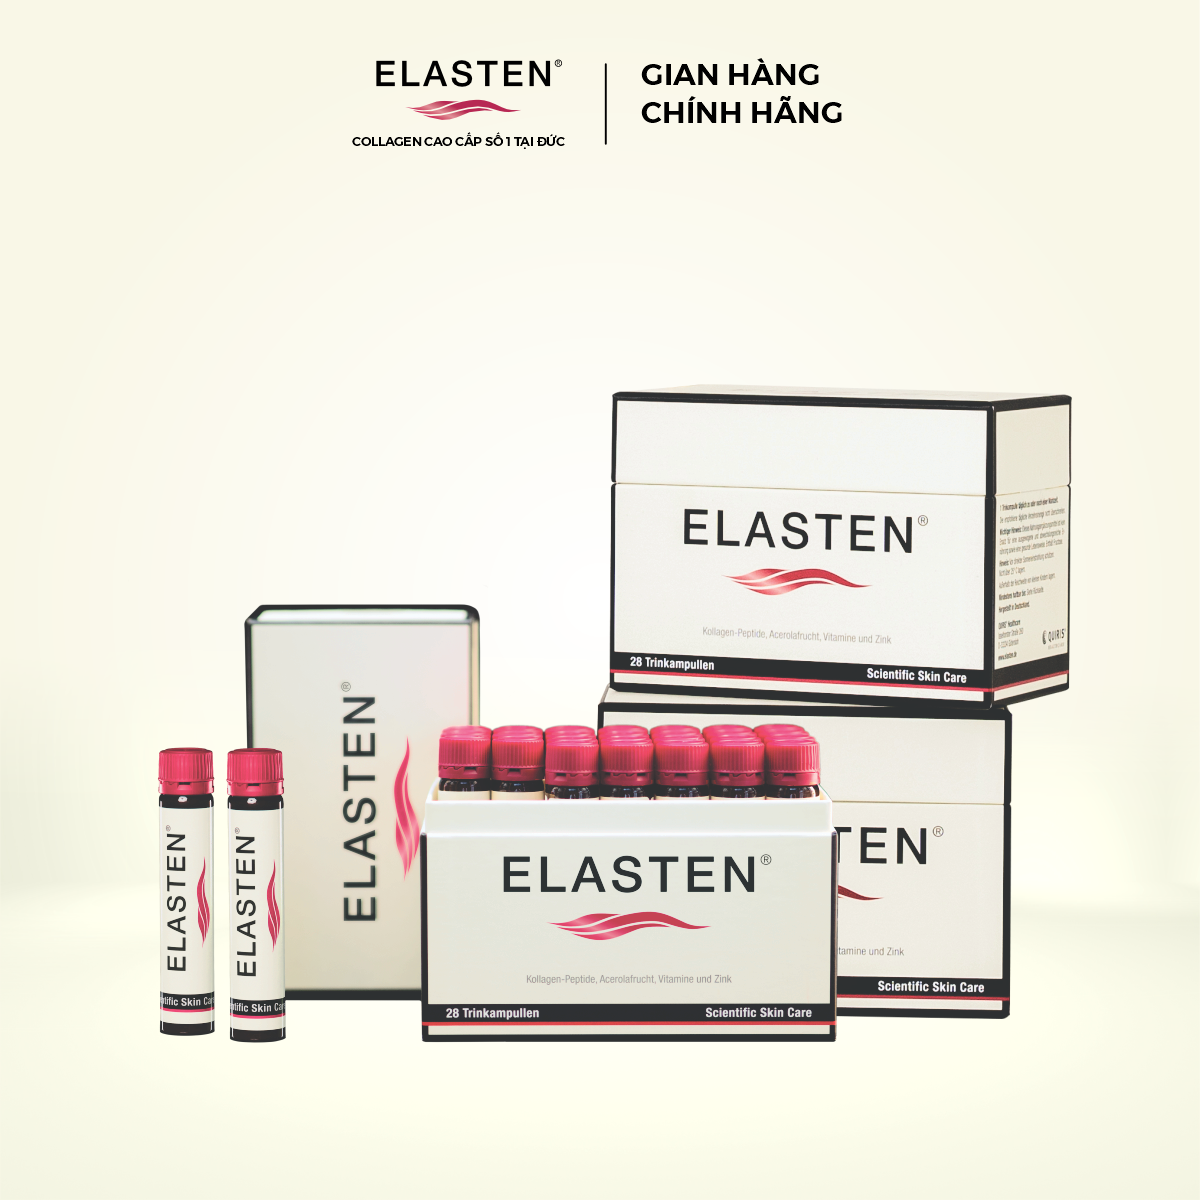 Collagen Elasten - Phiên bản đặc biệt 3 Hộp Giúp Da Căng Mịn, Chống Lão Hóa, Tóc Chắc Khỏe - Collagen Số 1 Tại Đức